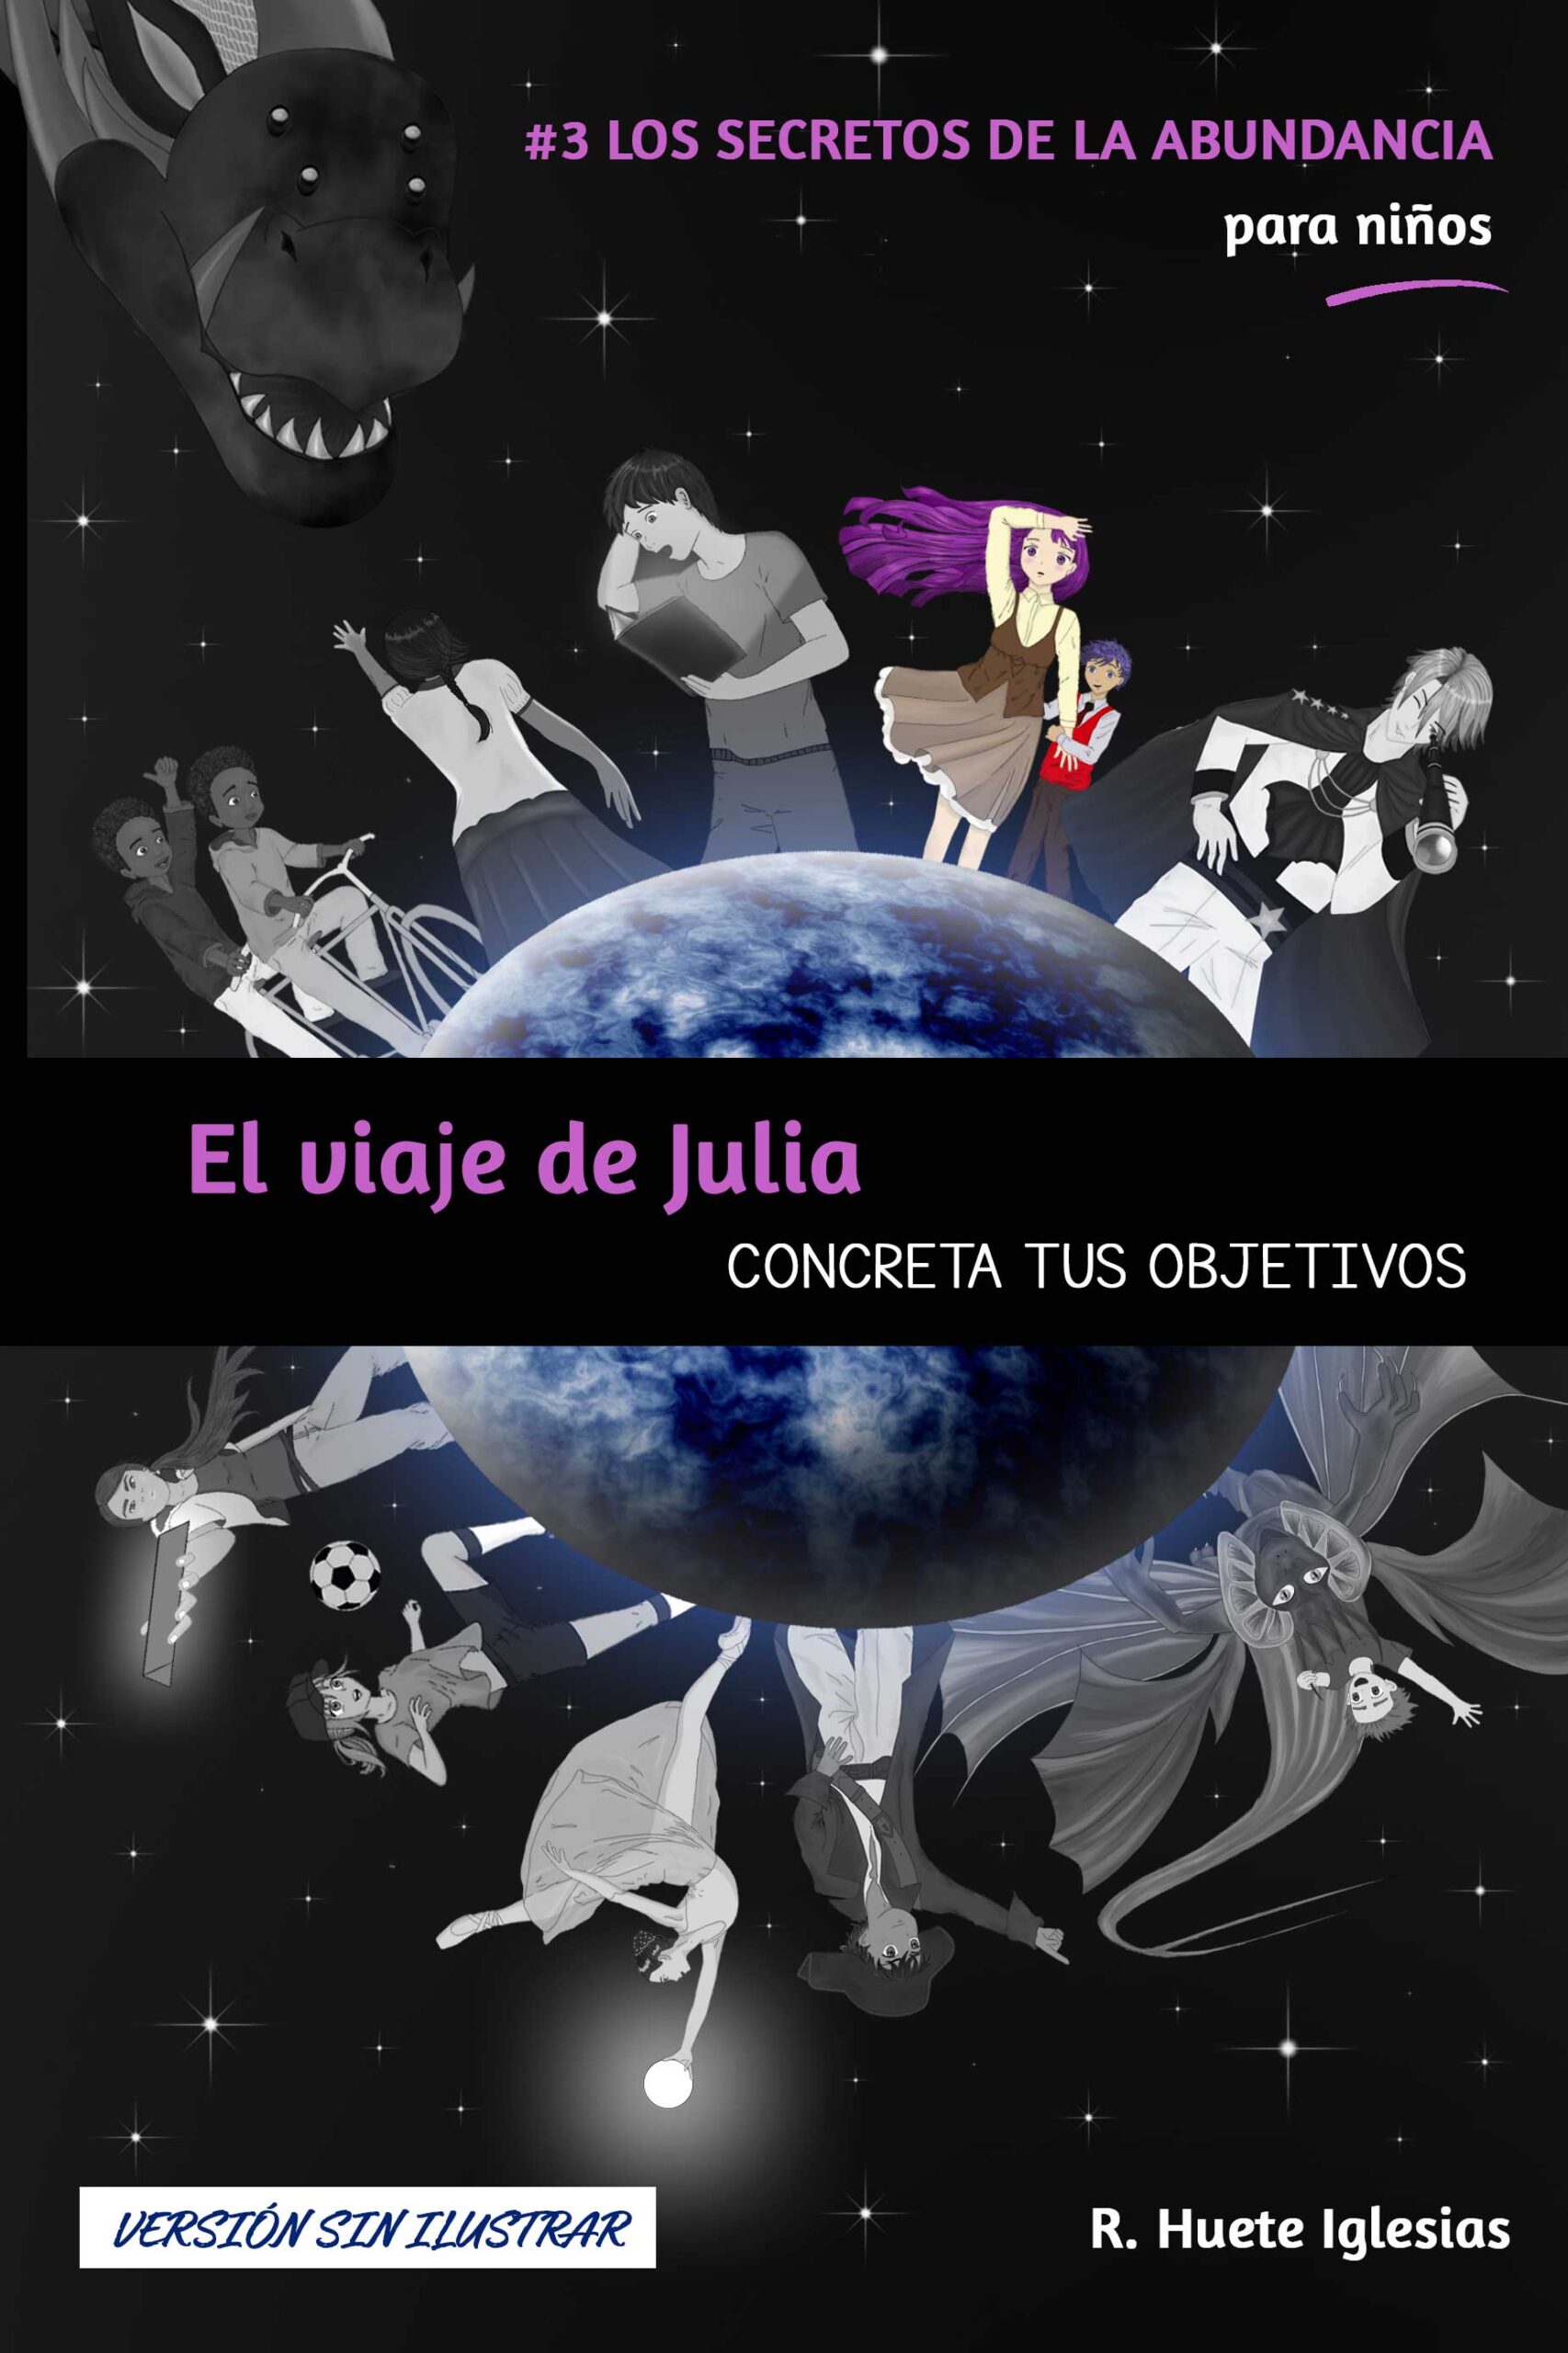 Julia De la Fuente 📕 on X: El 15 de febrero llega ESPINAS EN LA NIEVE. Una  novela en la que he querido rendir homenaje a los cuentos de nuestra  infancia y